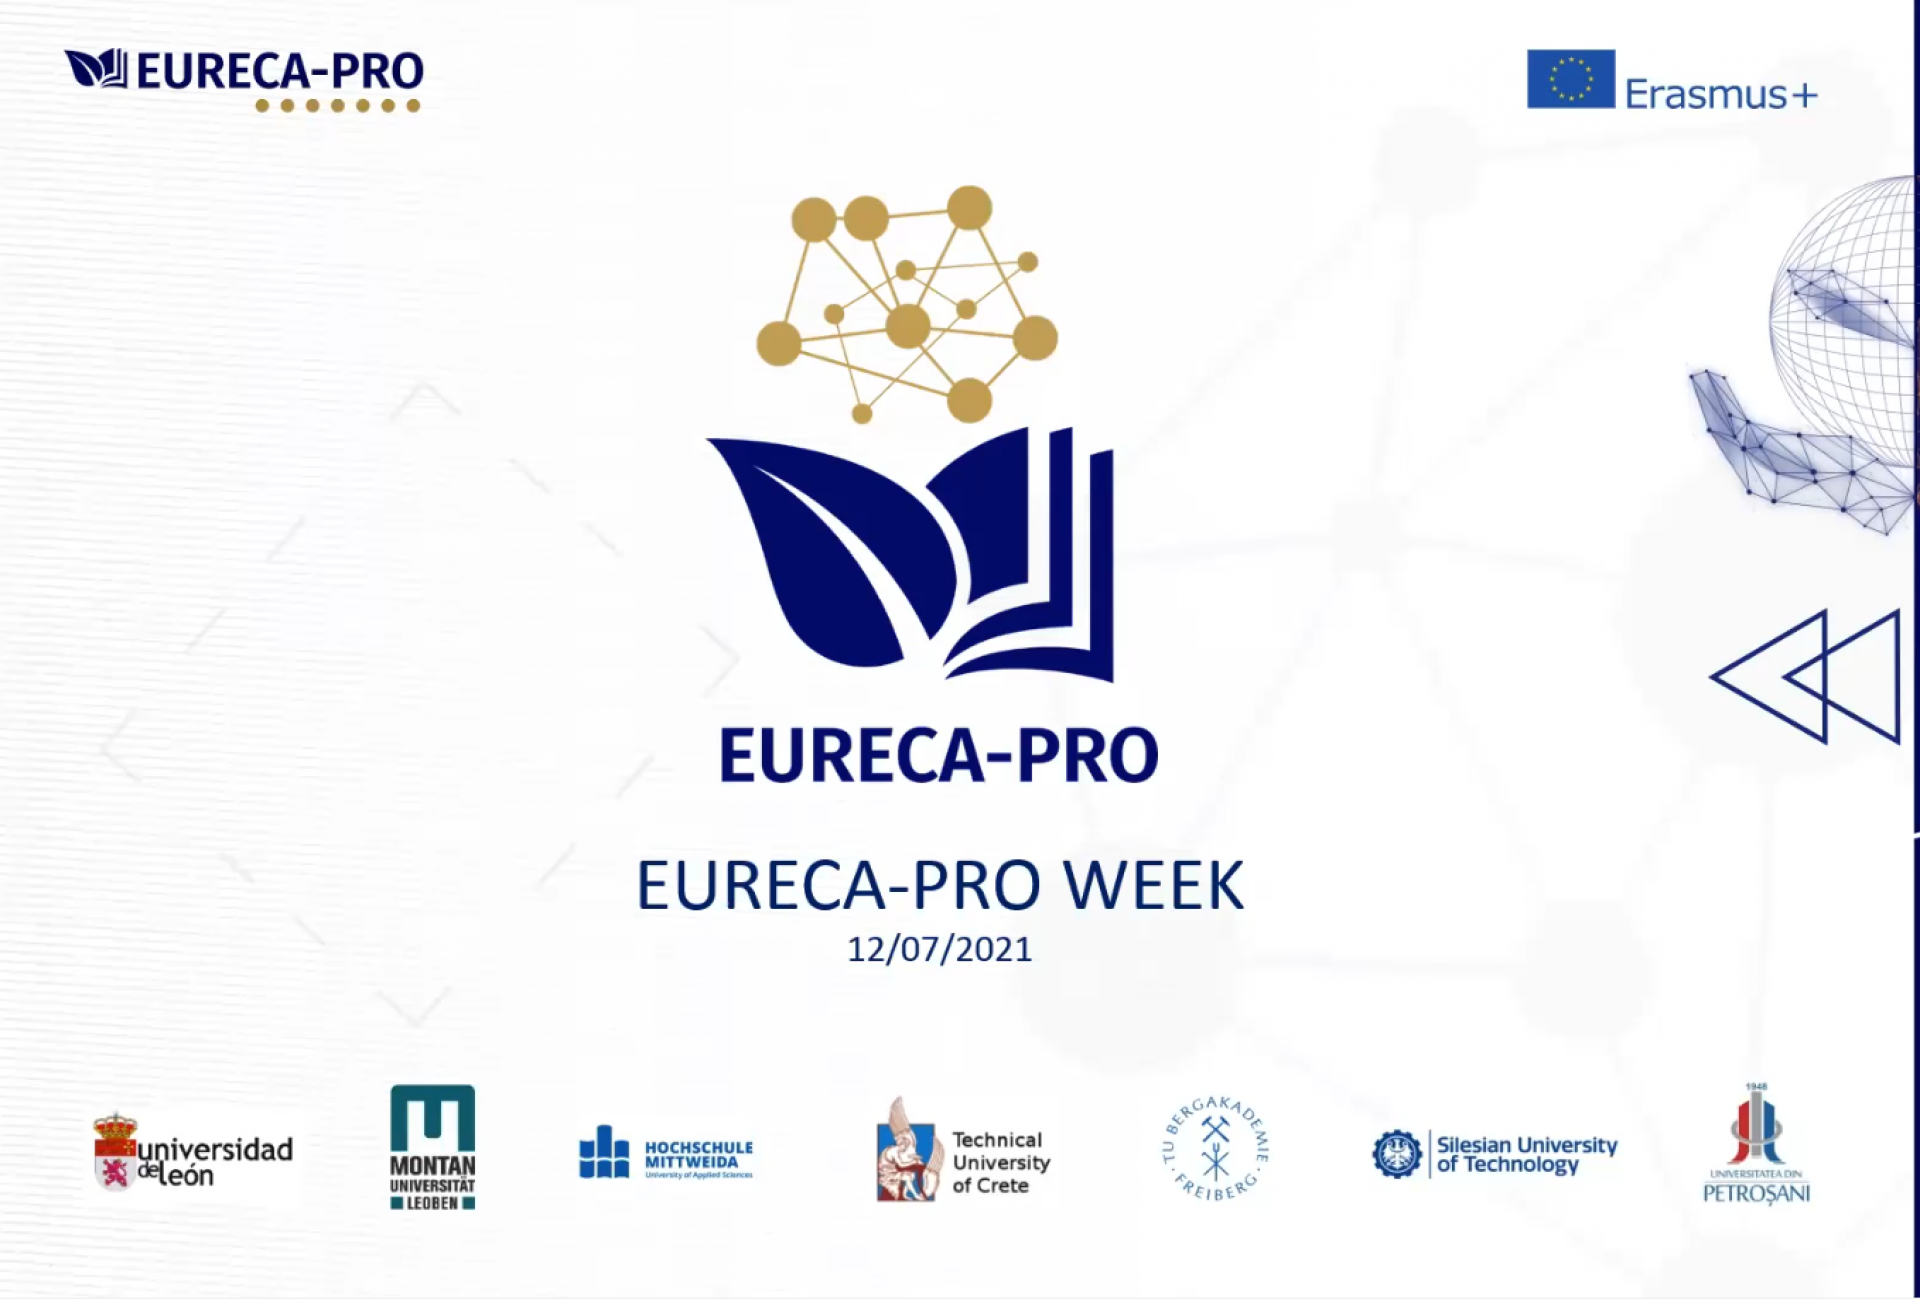  EURECA-PRO Week-Einführung in EURECA-PRO, Prof. Dr. Carsten Drebenstedt